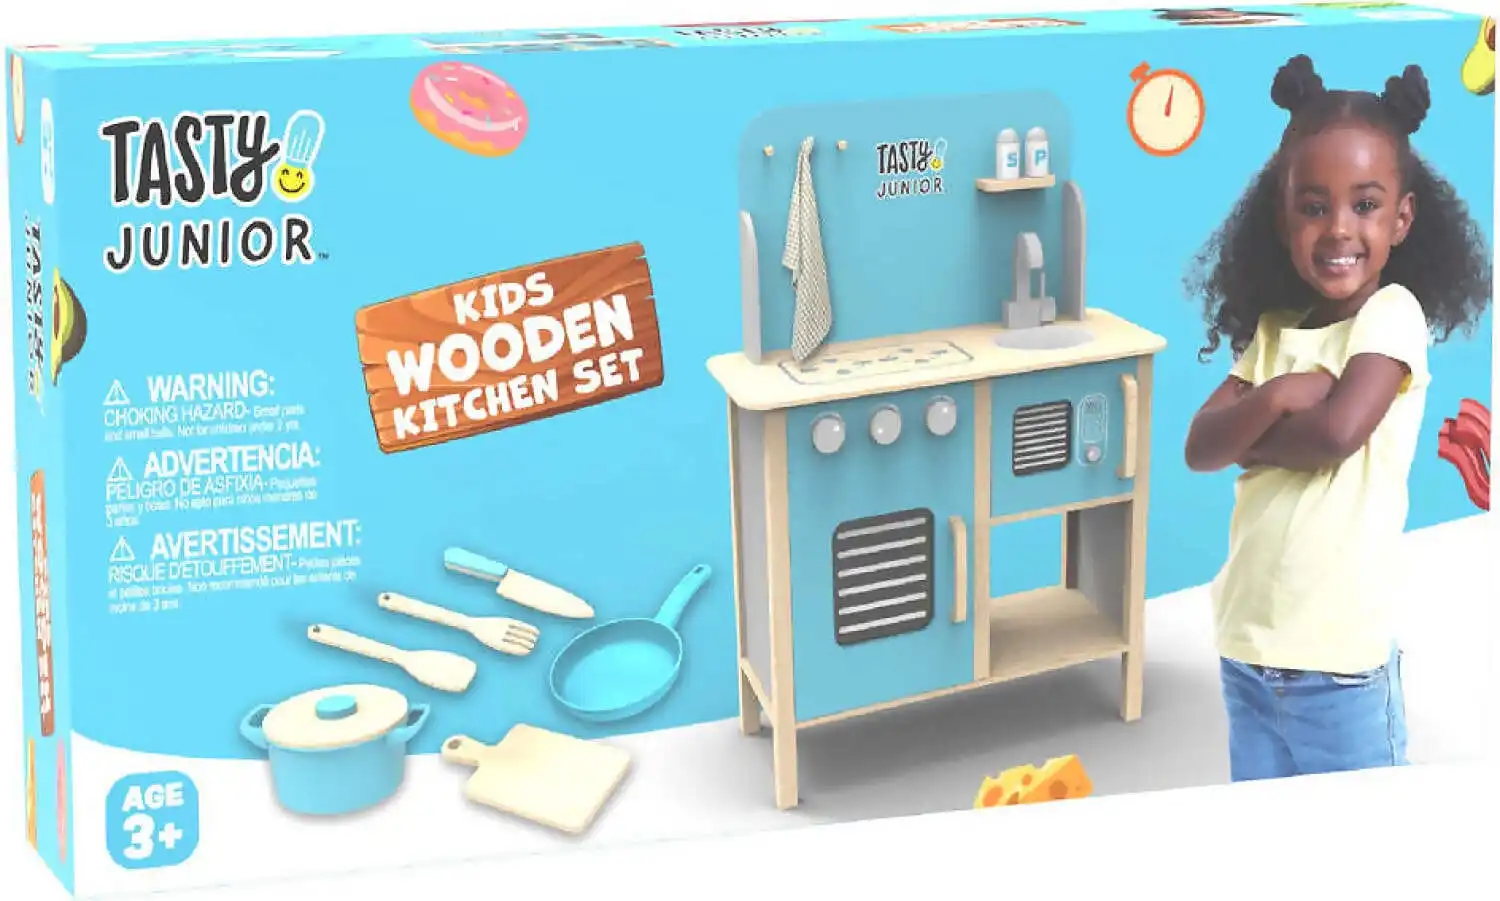 Tasty Junior - Wooden Kitchen Set